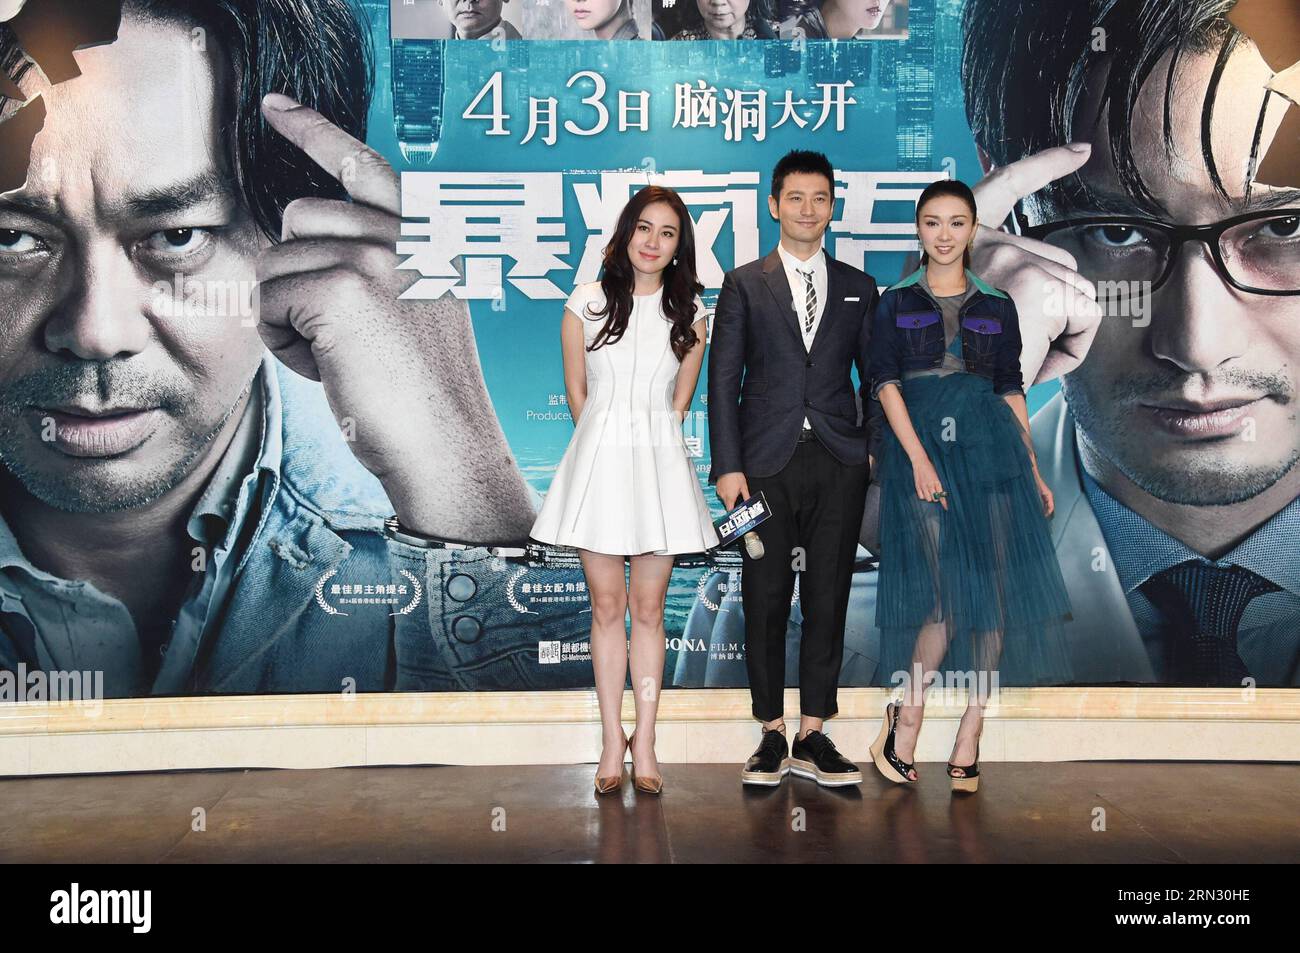 Les acteurs Michelle Ye, Huang Xiaoming et Fiona Sit (de gauche à droite) assistent à une conférence de presse pour promouvoir le film Insanity à Pékin, capitale de la Chine, le 31 mars 2015. Le film Insanity sera à l'écran le 3 avril. ) (lfj) CHINA-BEIJING-FILM INSANTIY -PRESS CONFERENCE (CN) JixGuoqiang PUBLICATIONxNOTxINxCHN les acteurs Michelle Ye Huang Xiao Ming et Fiona assistent de gauche à droite à une conférence de presse pour promouvoir la folie cinématographique à Beijing capitale de la Chine Mars 31 2015 le film Insanity sera À l'écran LE 3 avril China Beijing film Conférence de presse CN PUBLICATIONxNOTxINxCHN Banque D'Images